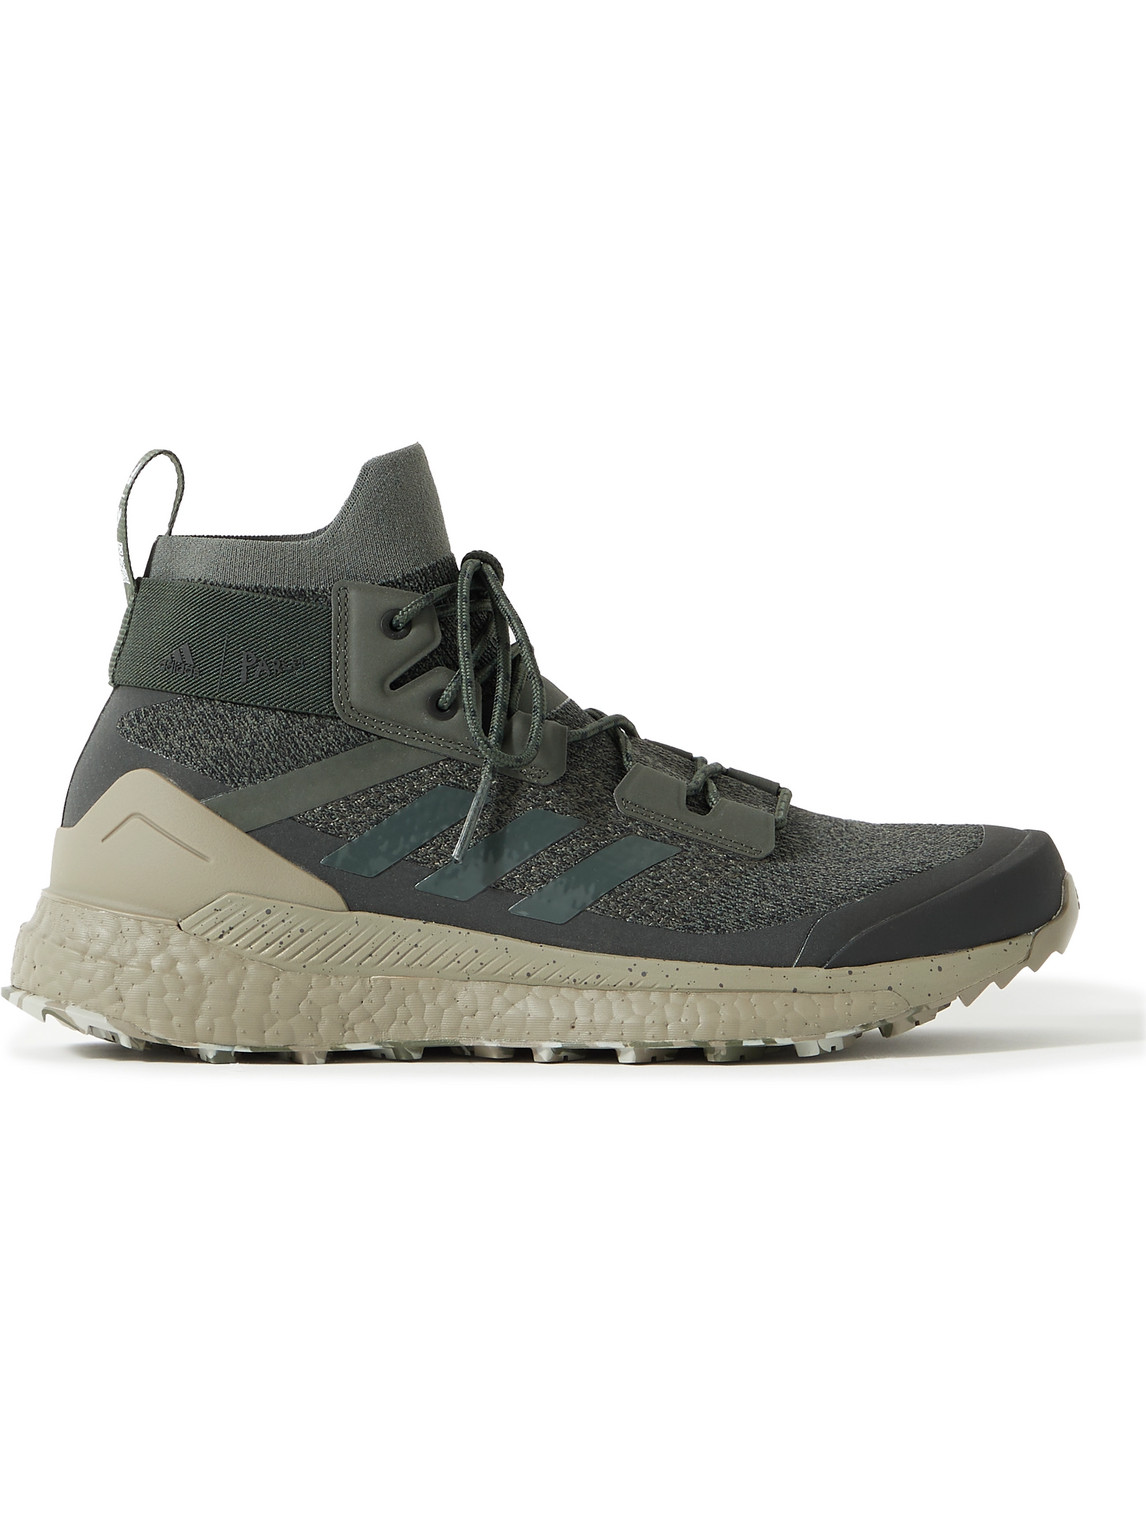 Adidas Consortium Parley Terrex Free Hiker Primeknit Sneakers In Black